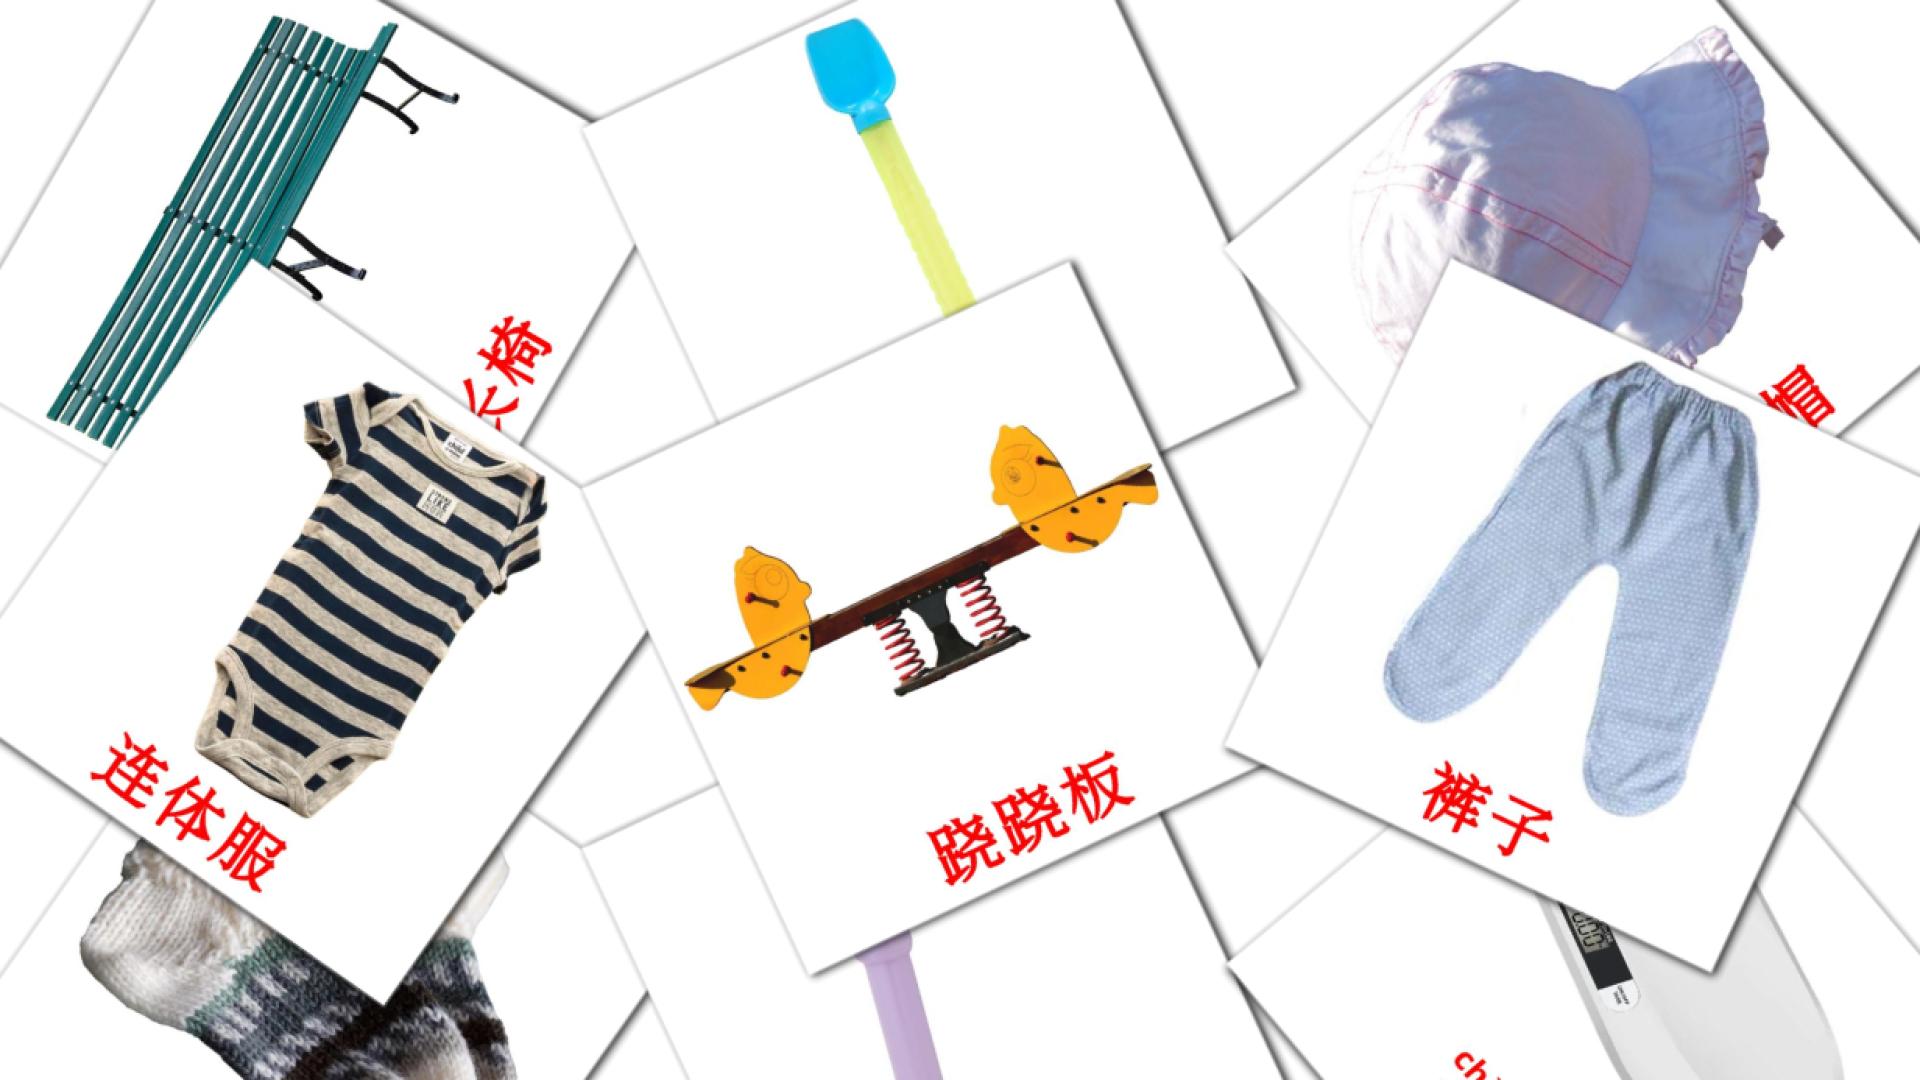 宝宝 chinese(Simplified) vocabulary flashcards